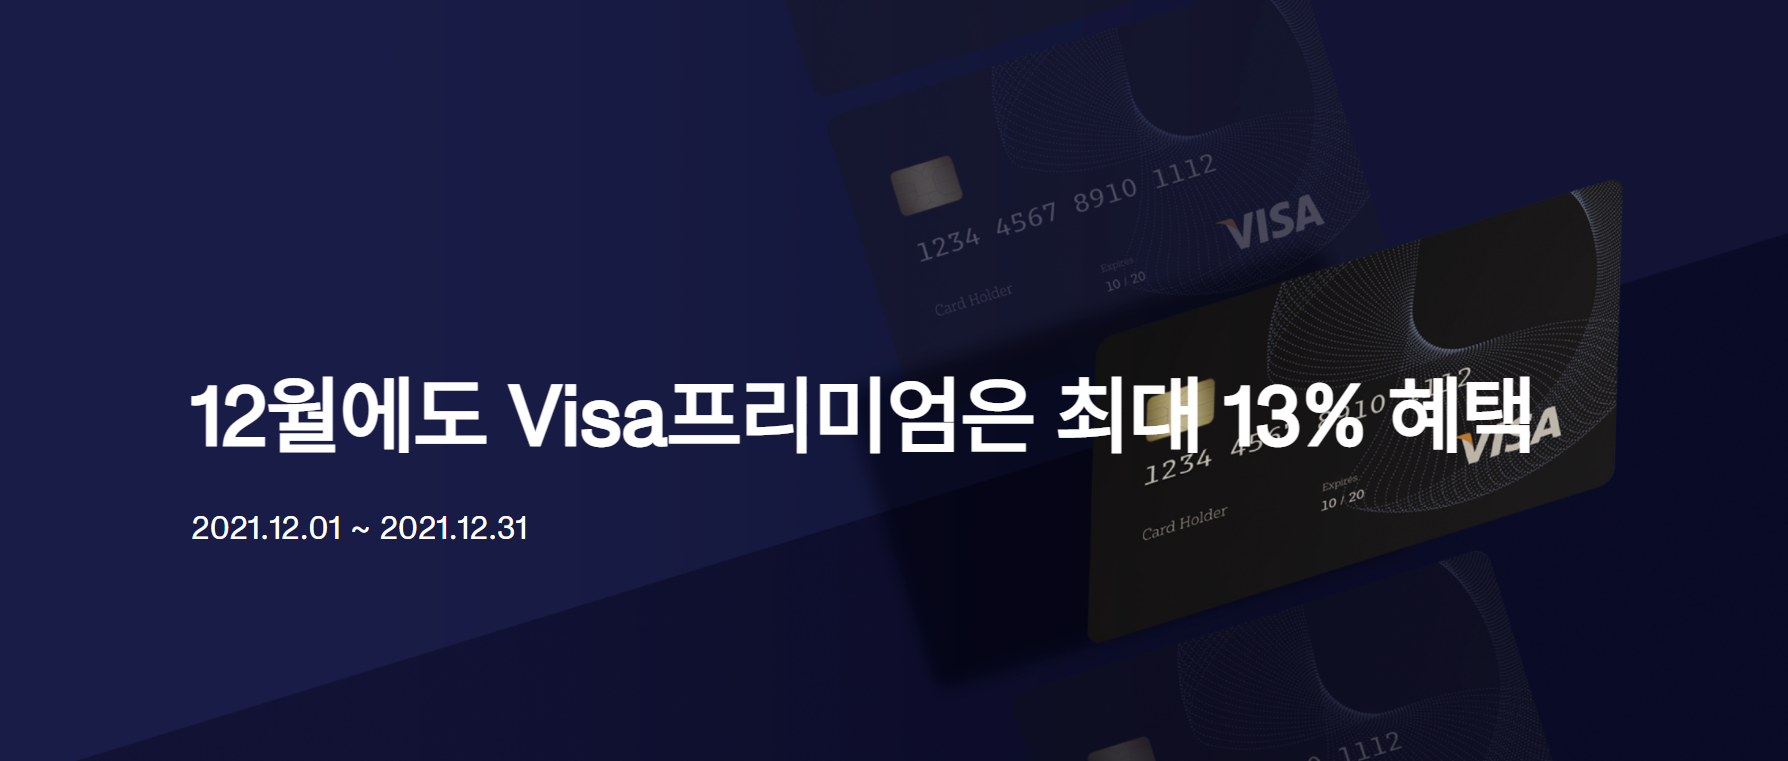 Visa__.png